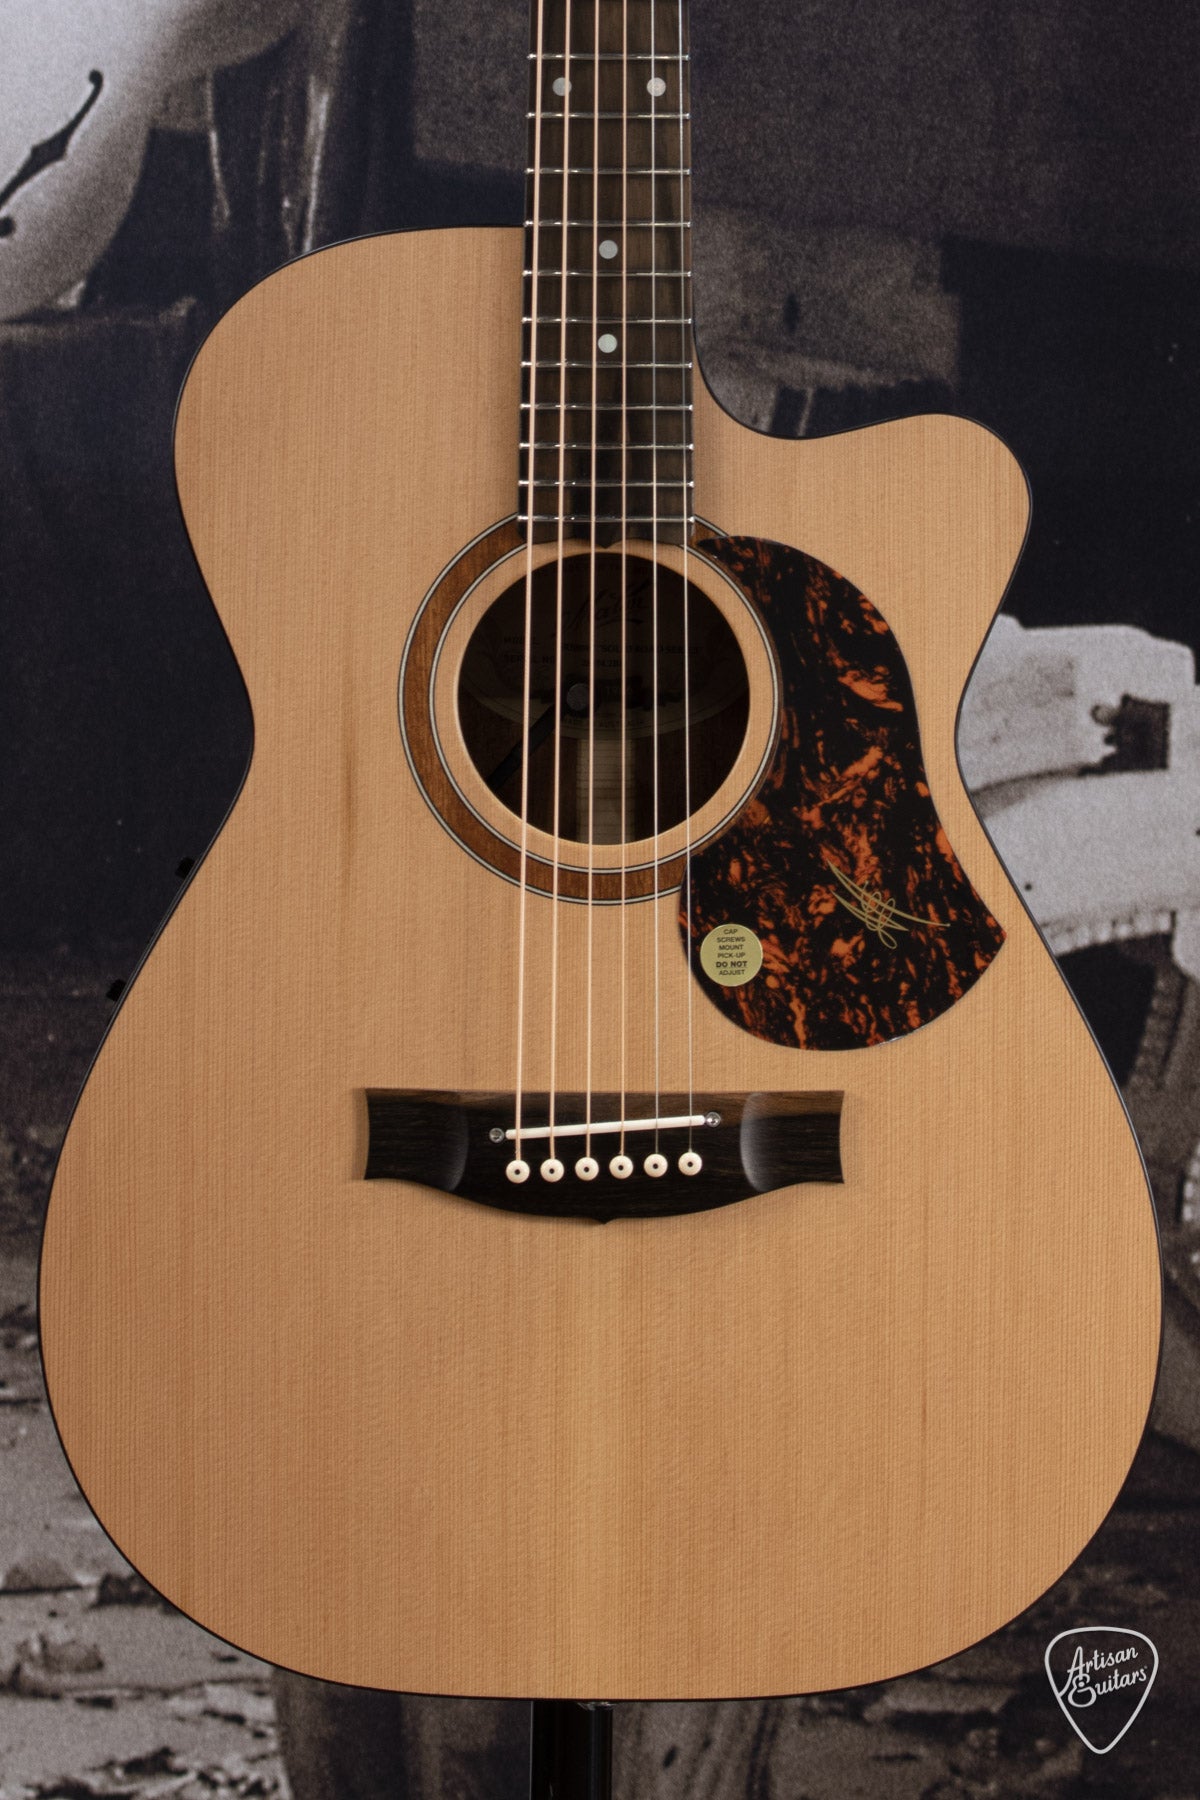 Maton Guitars Solid Road Series SRS-808C Cutaway - 16392